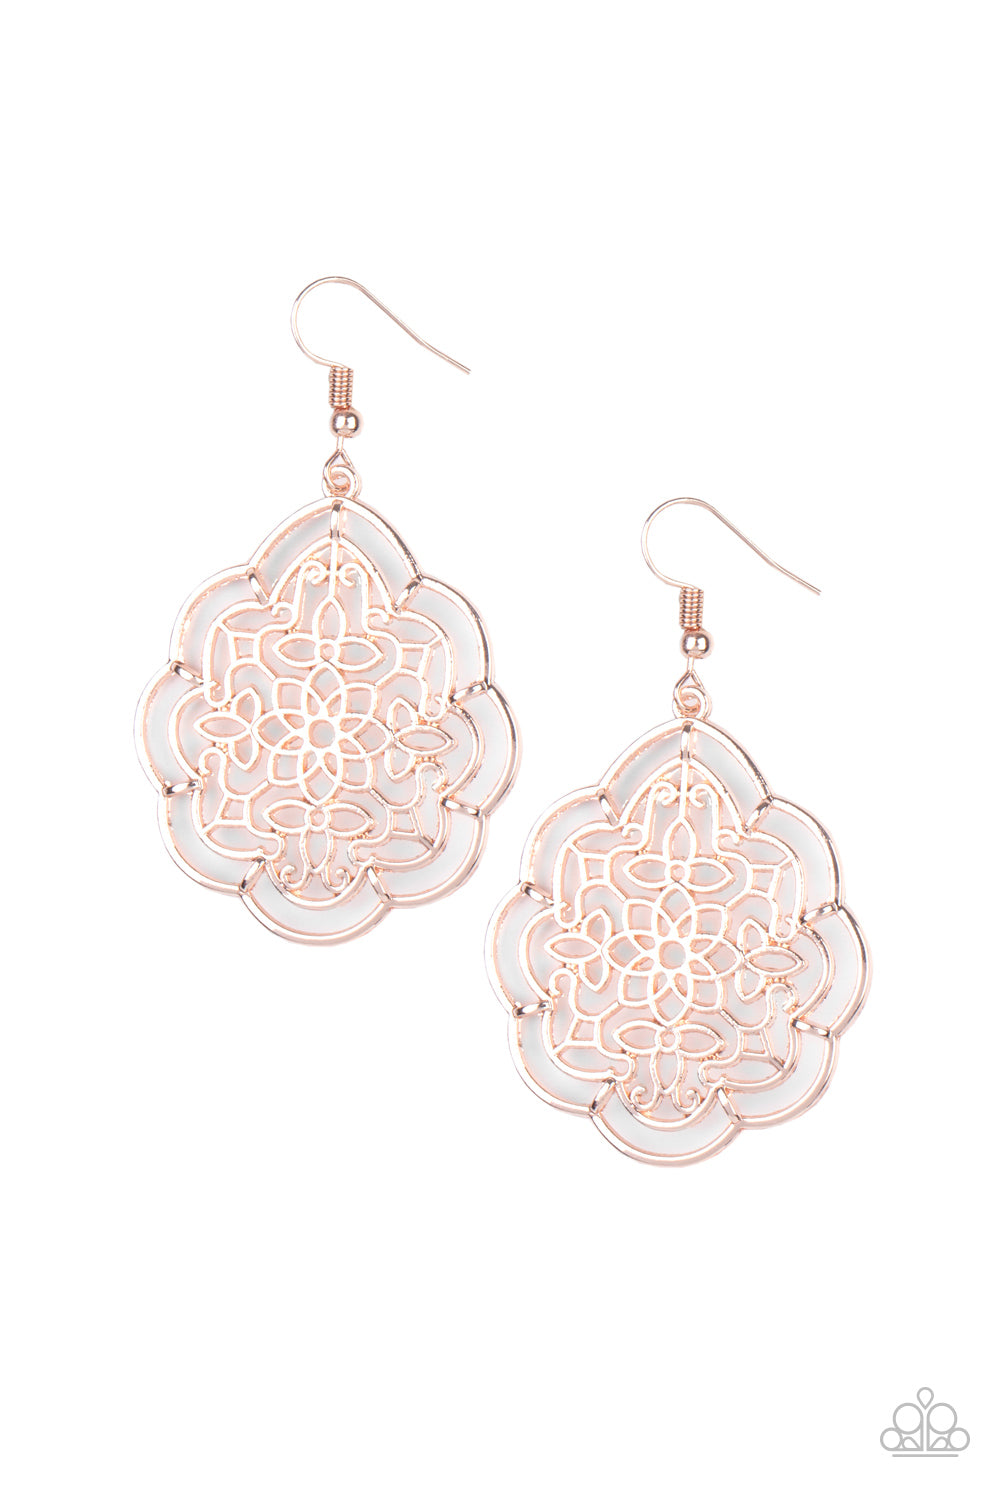 Tour de Taj Mahal - Rose Gold earring 996